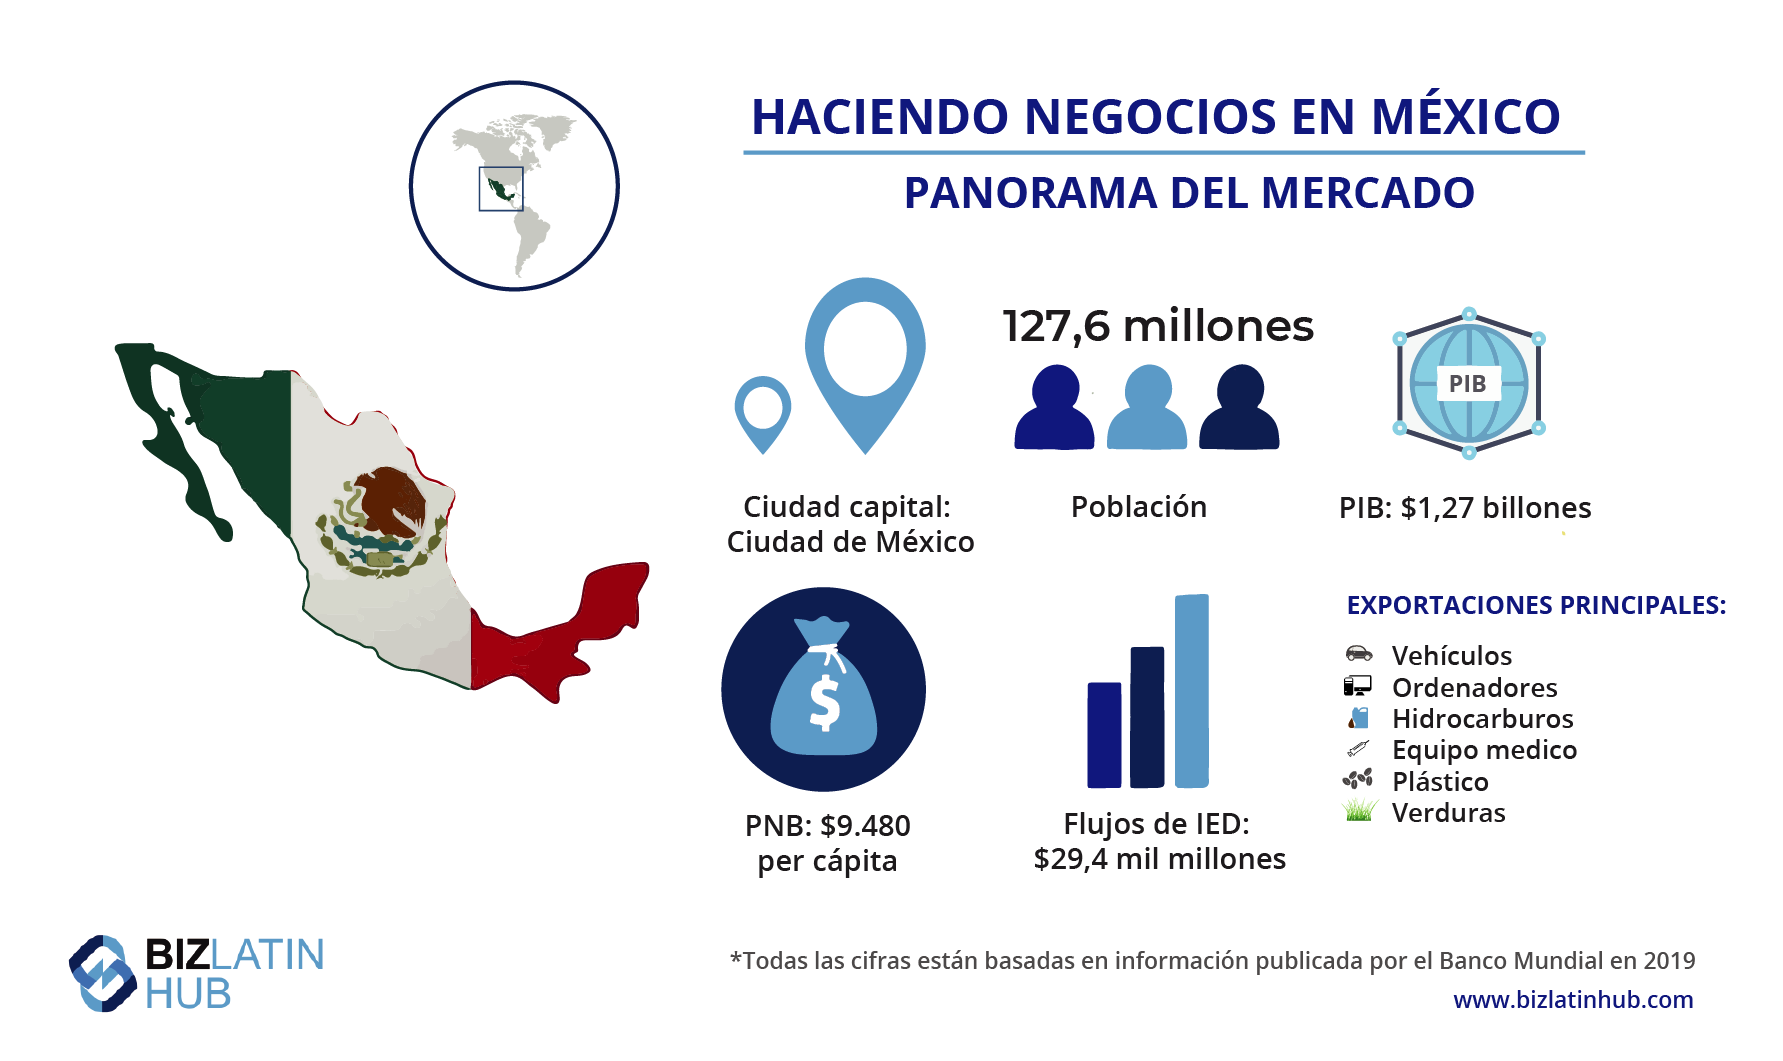 Panorama del mercado de los negocios en México